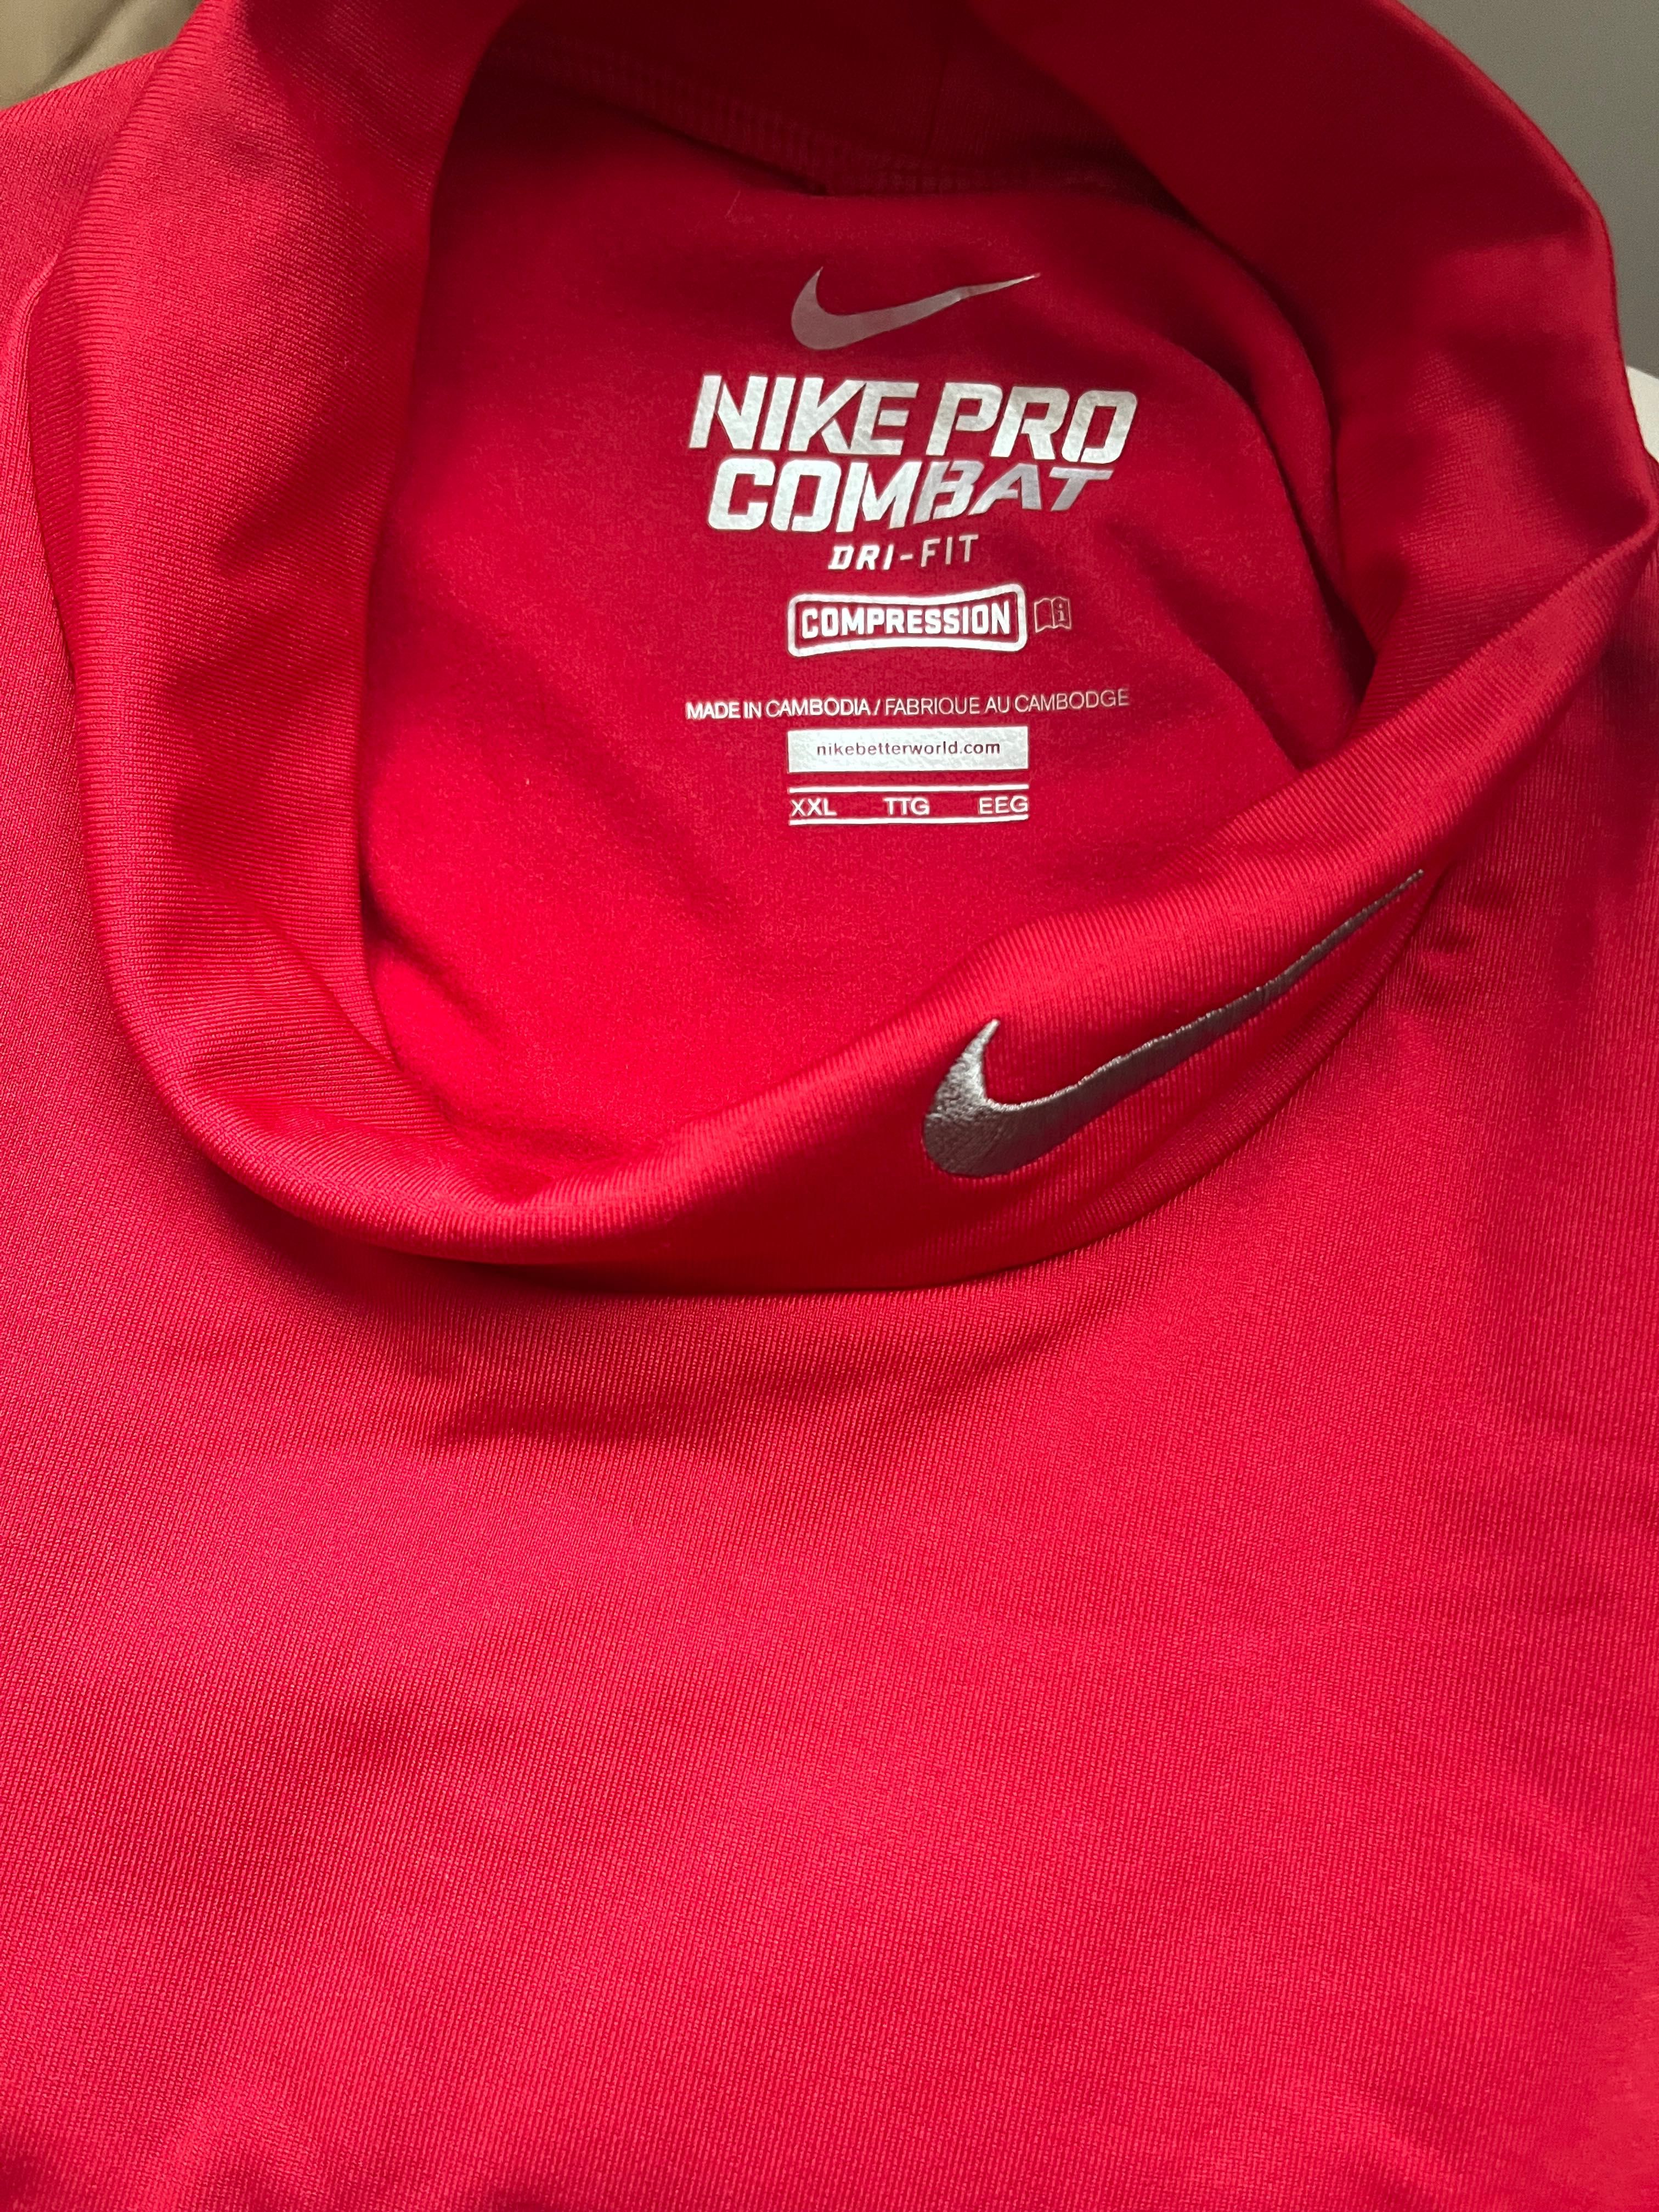 Nike PRO Combat DRI-FIT оригинална термо блуза Найк спорт фитнес